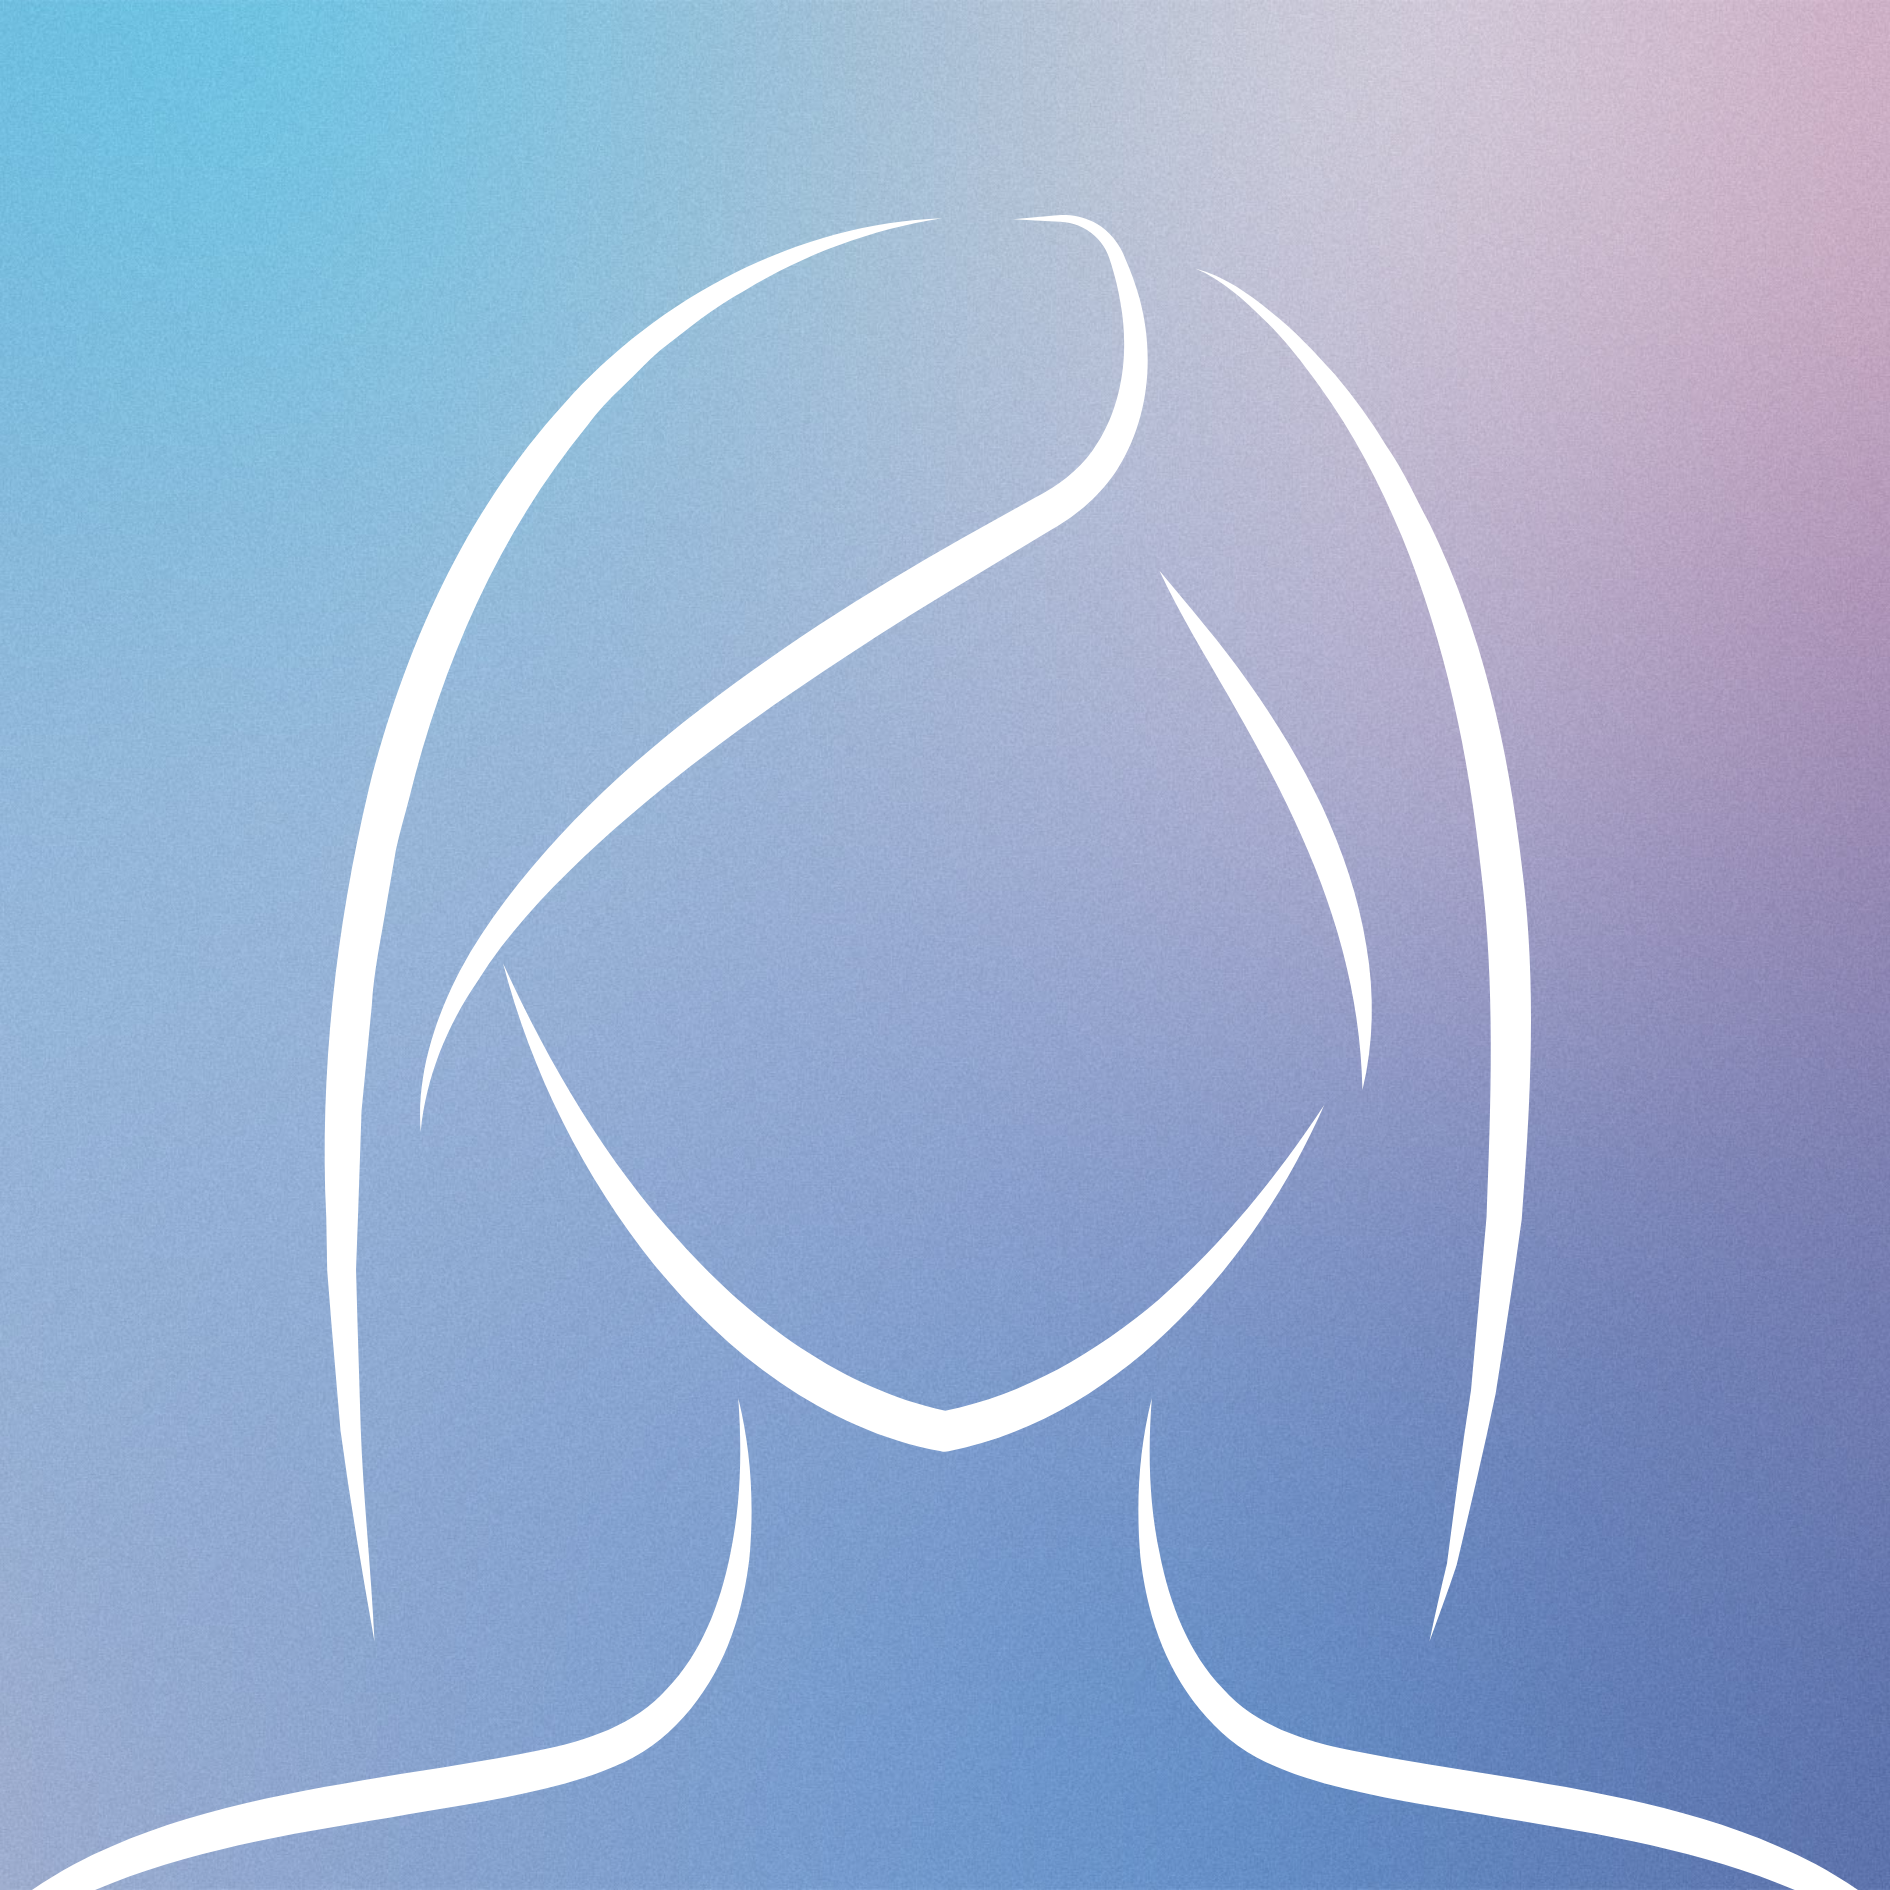 Silhouette eines anonymen weiblichen Profils vor einem blau-violett verlaufenden Hintergrund für SEO und Barrierefreiheit.